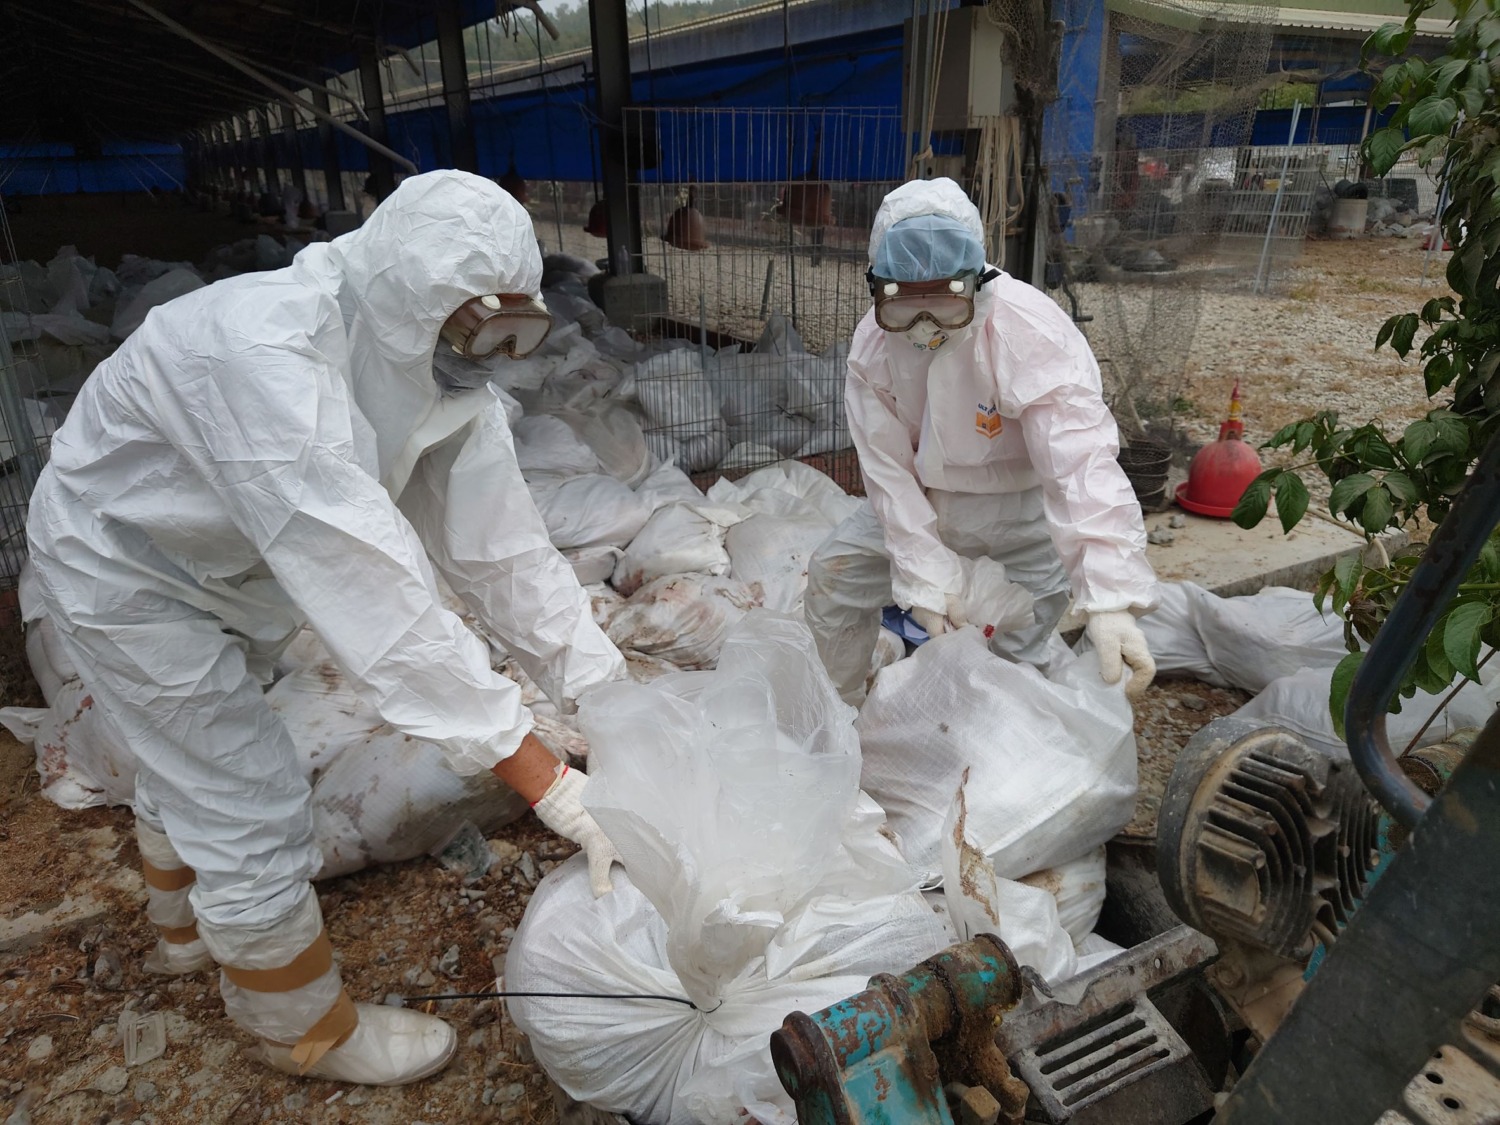 臺南土雞場檢出禽流感 動保處即時處置積極防堵疫情